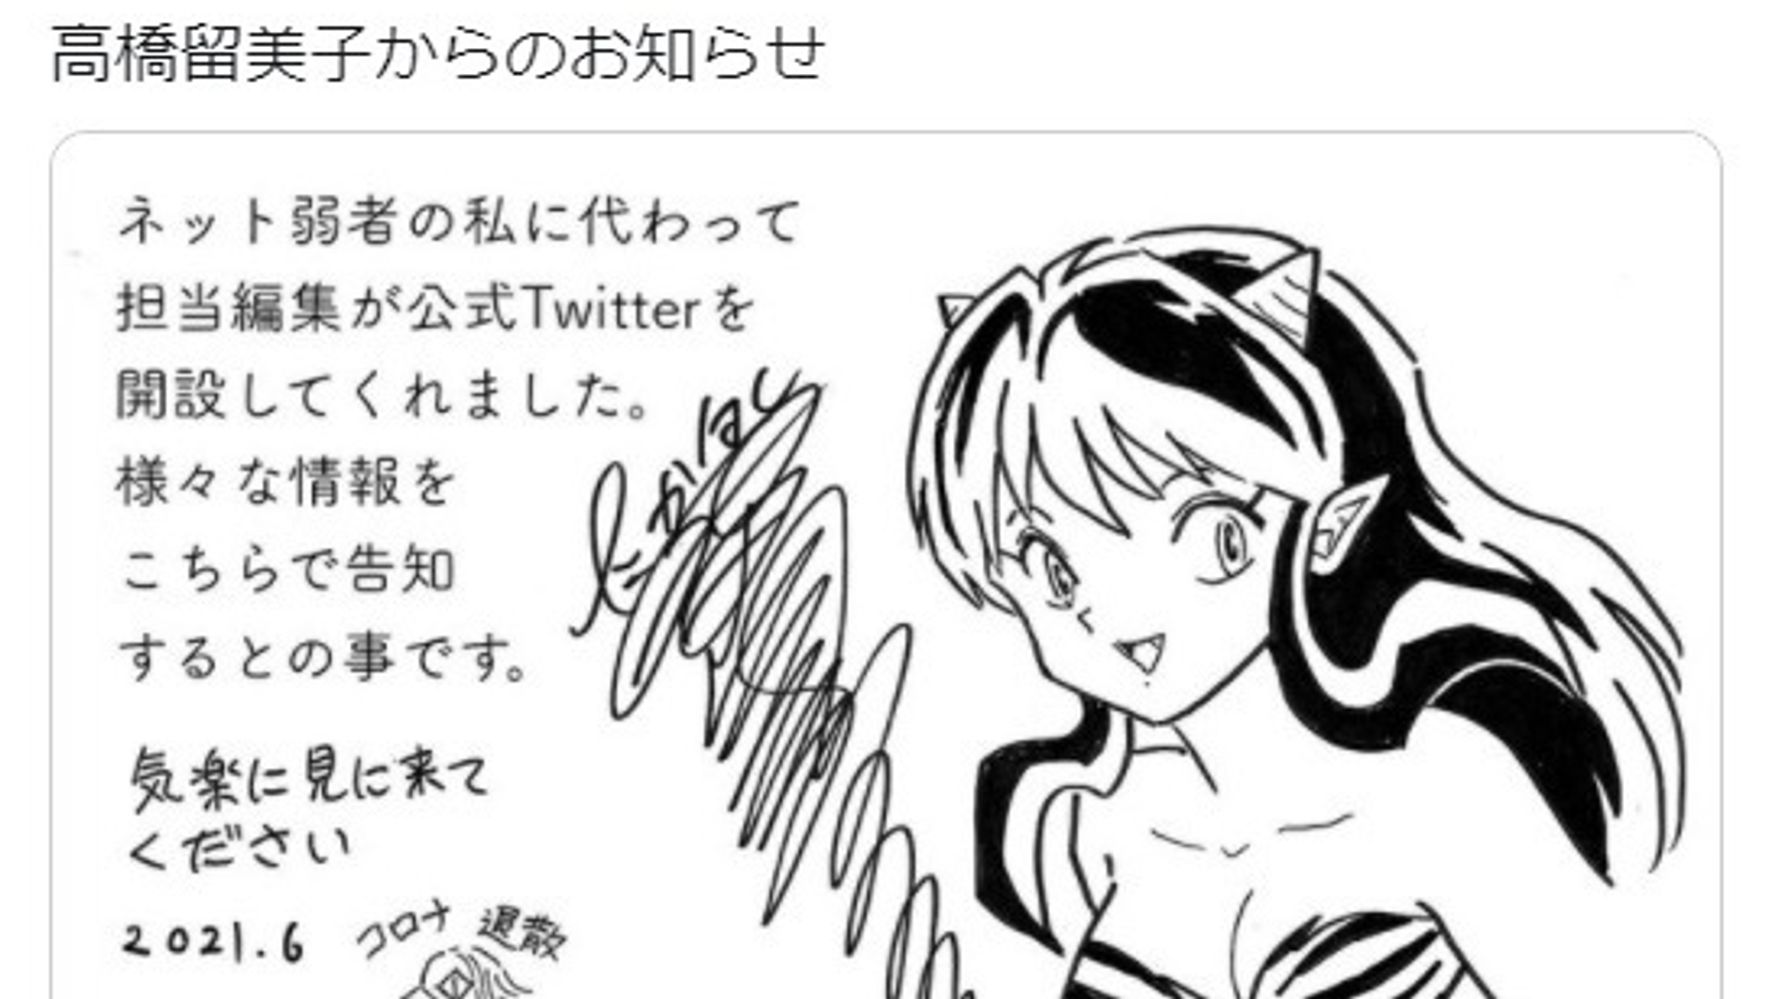 高橋留美子さん公式twitter開設 うる星やつら の絵を投稿 夢のようなお知らせだっちゃ とファン歓喜 ハフポスト